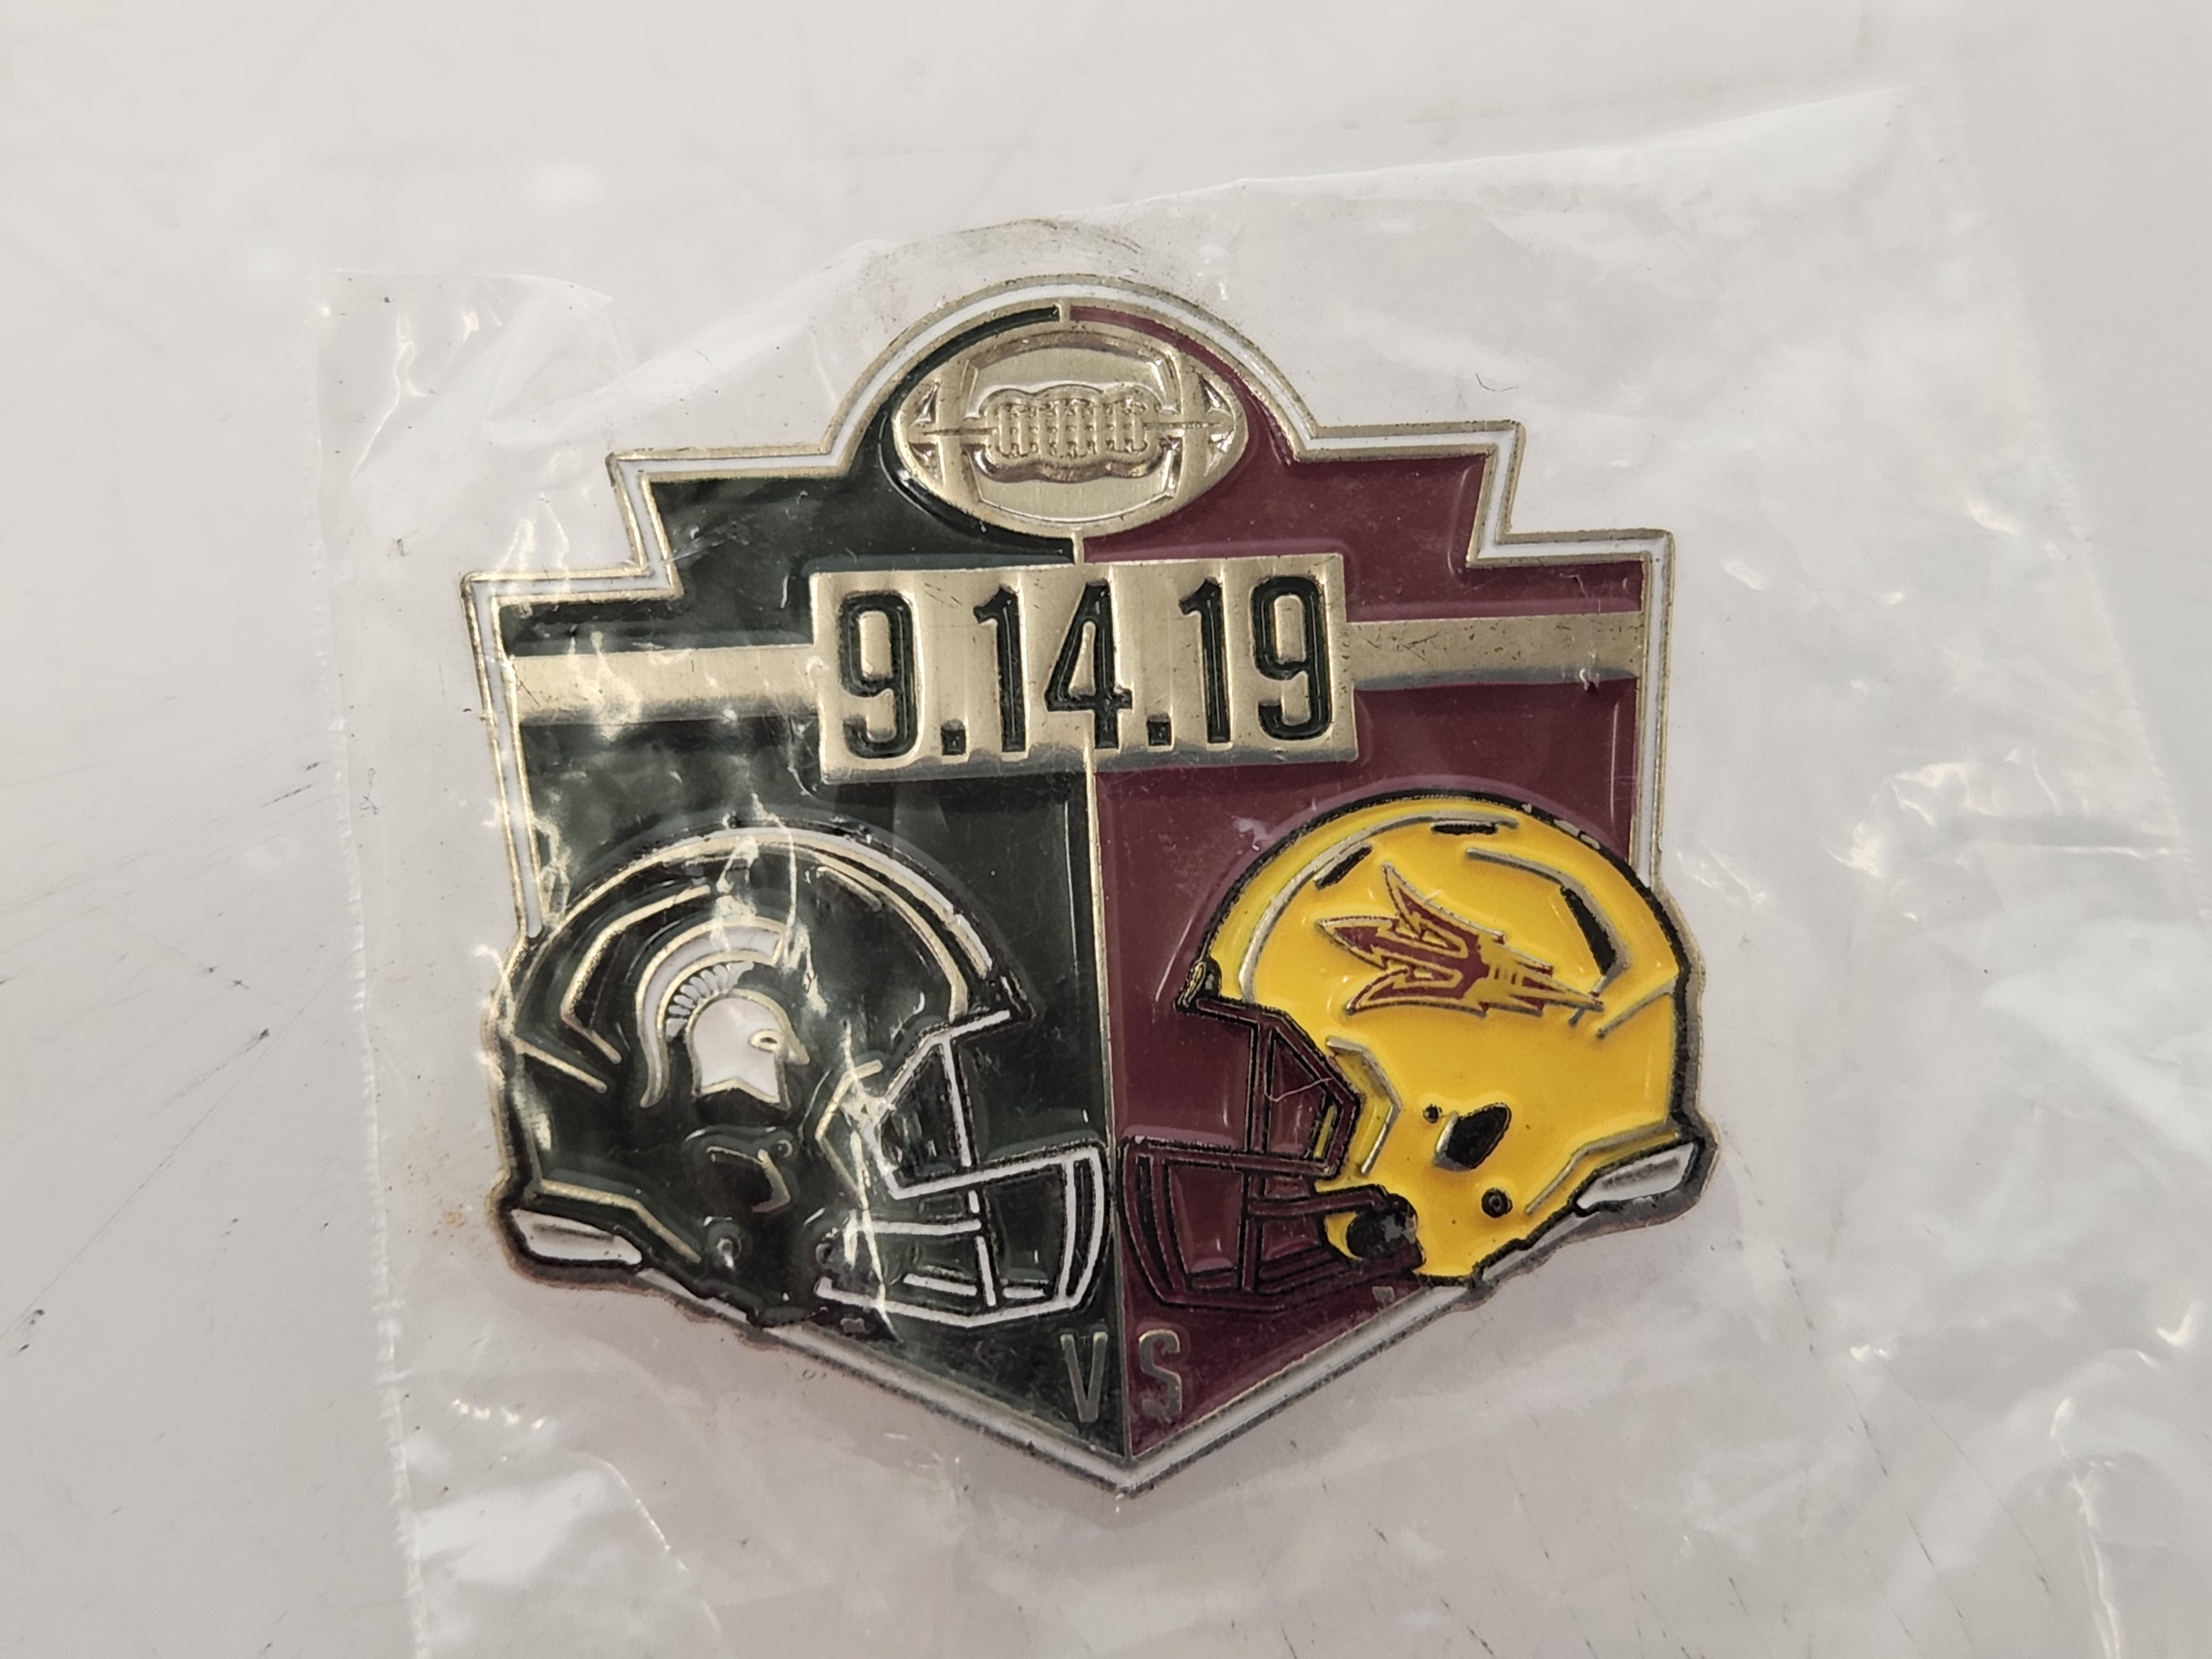 2019 Michigan State vs. Arizona State Gameday Pin